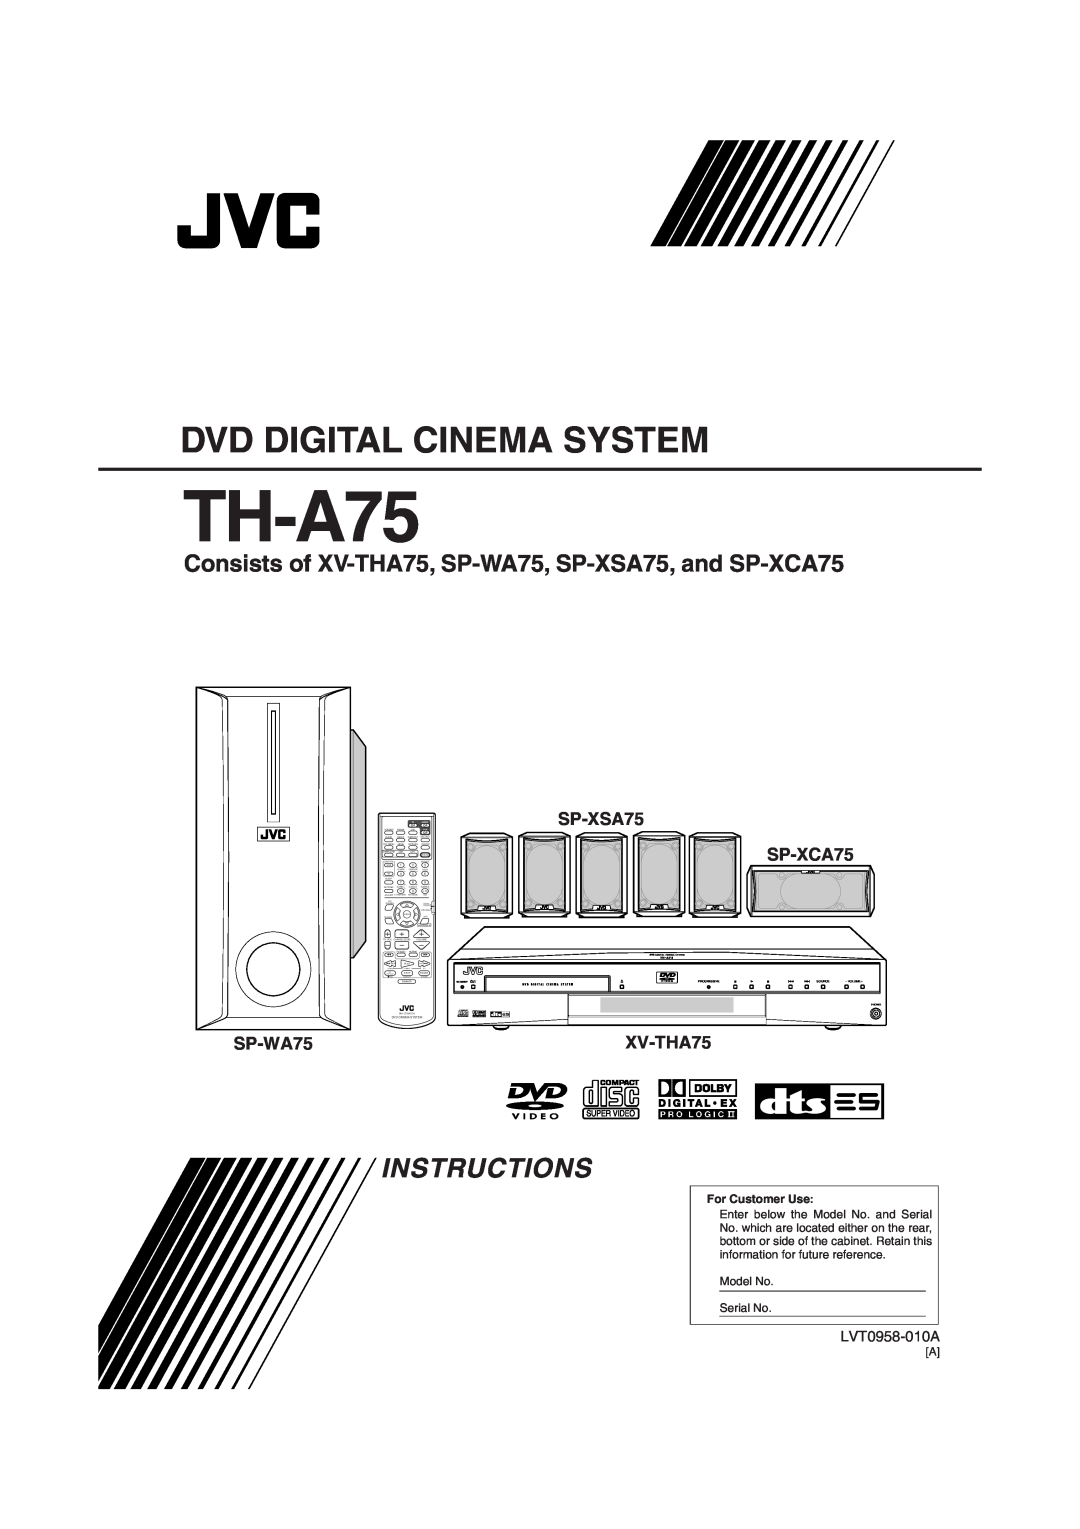 JVC TH-A75 manual SP-XSA75 SP-XCA75, SP-WA75, XV-THA75, Dvd Digital Cinema System, Instructions, LVT0958-010A 